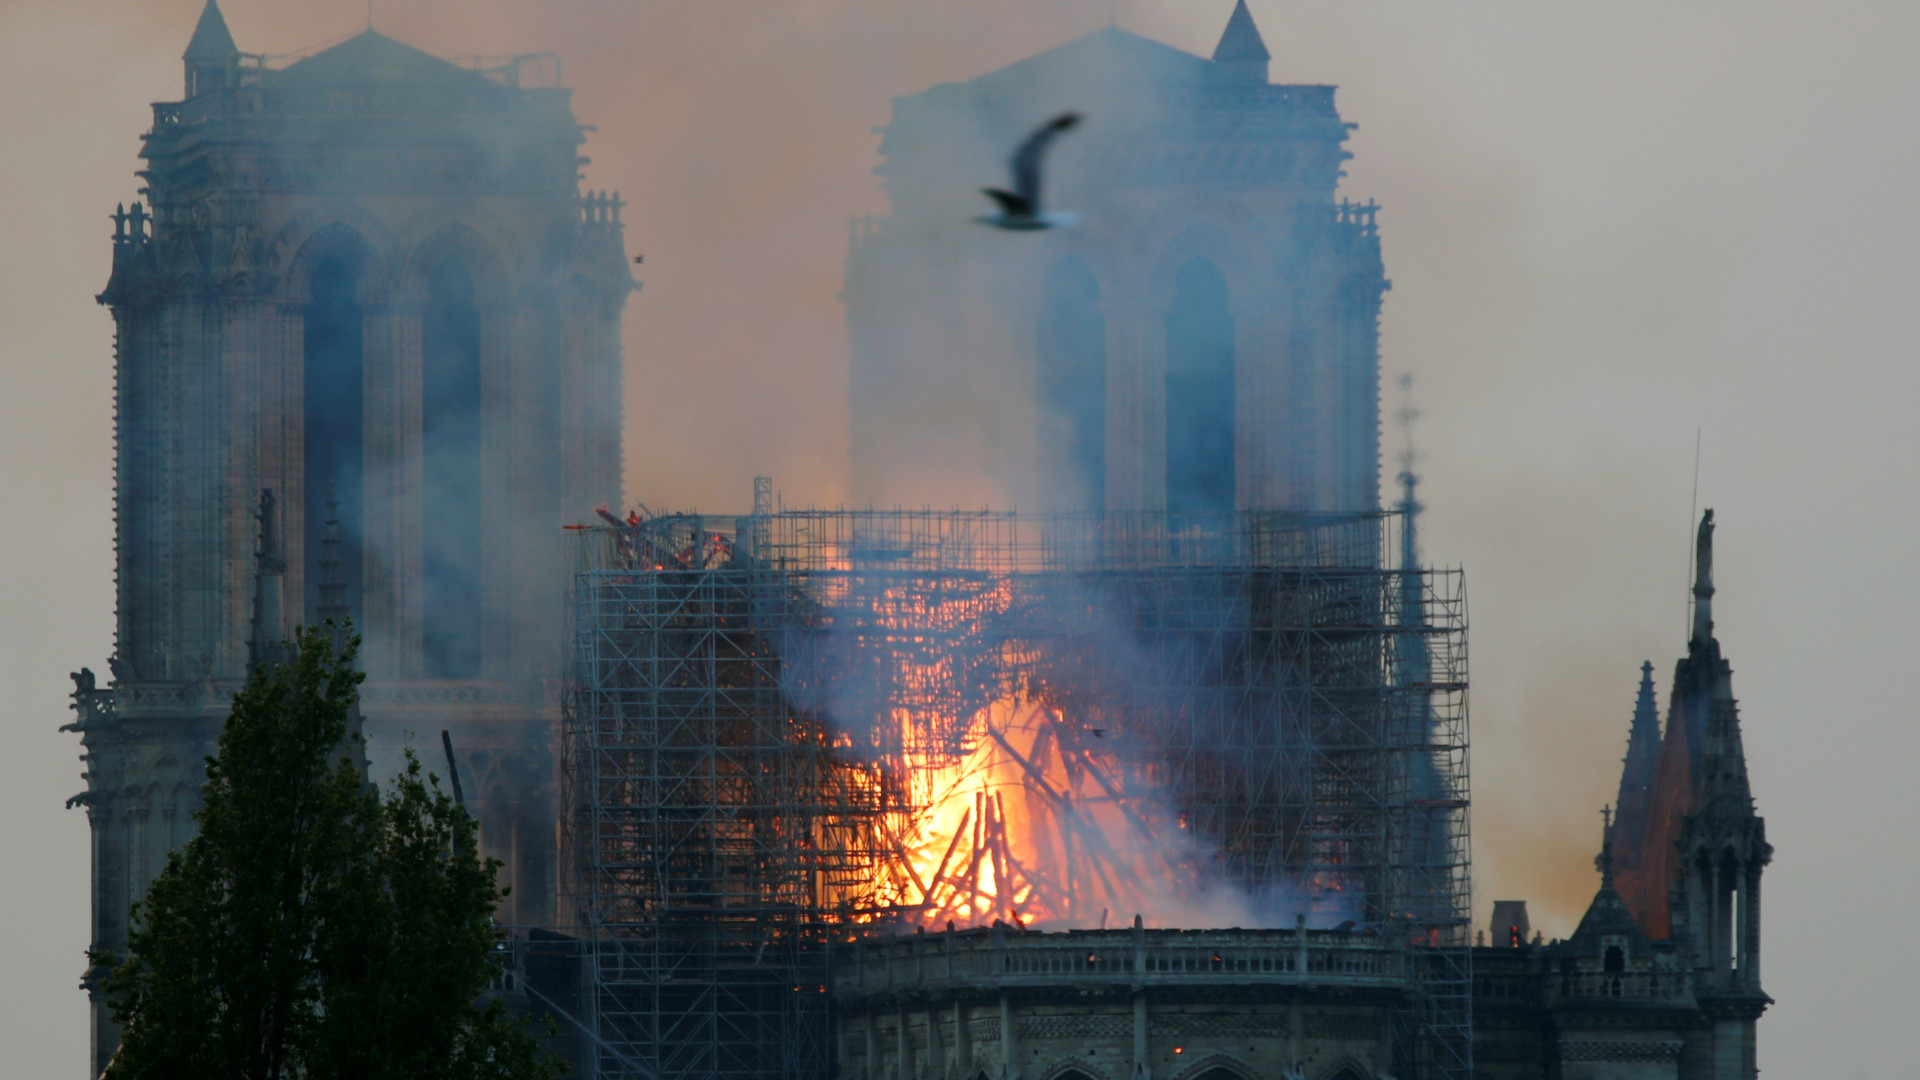 França pede doações e avalia danos na Notre-Dame